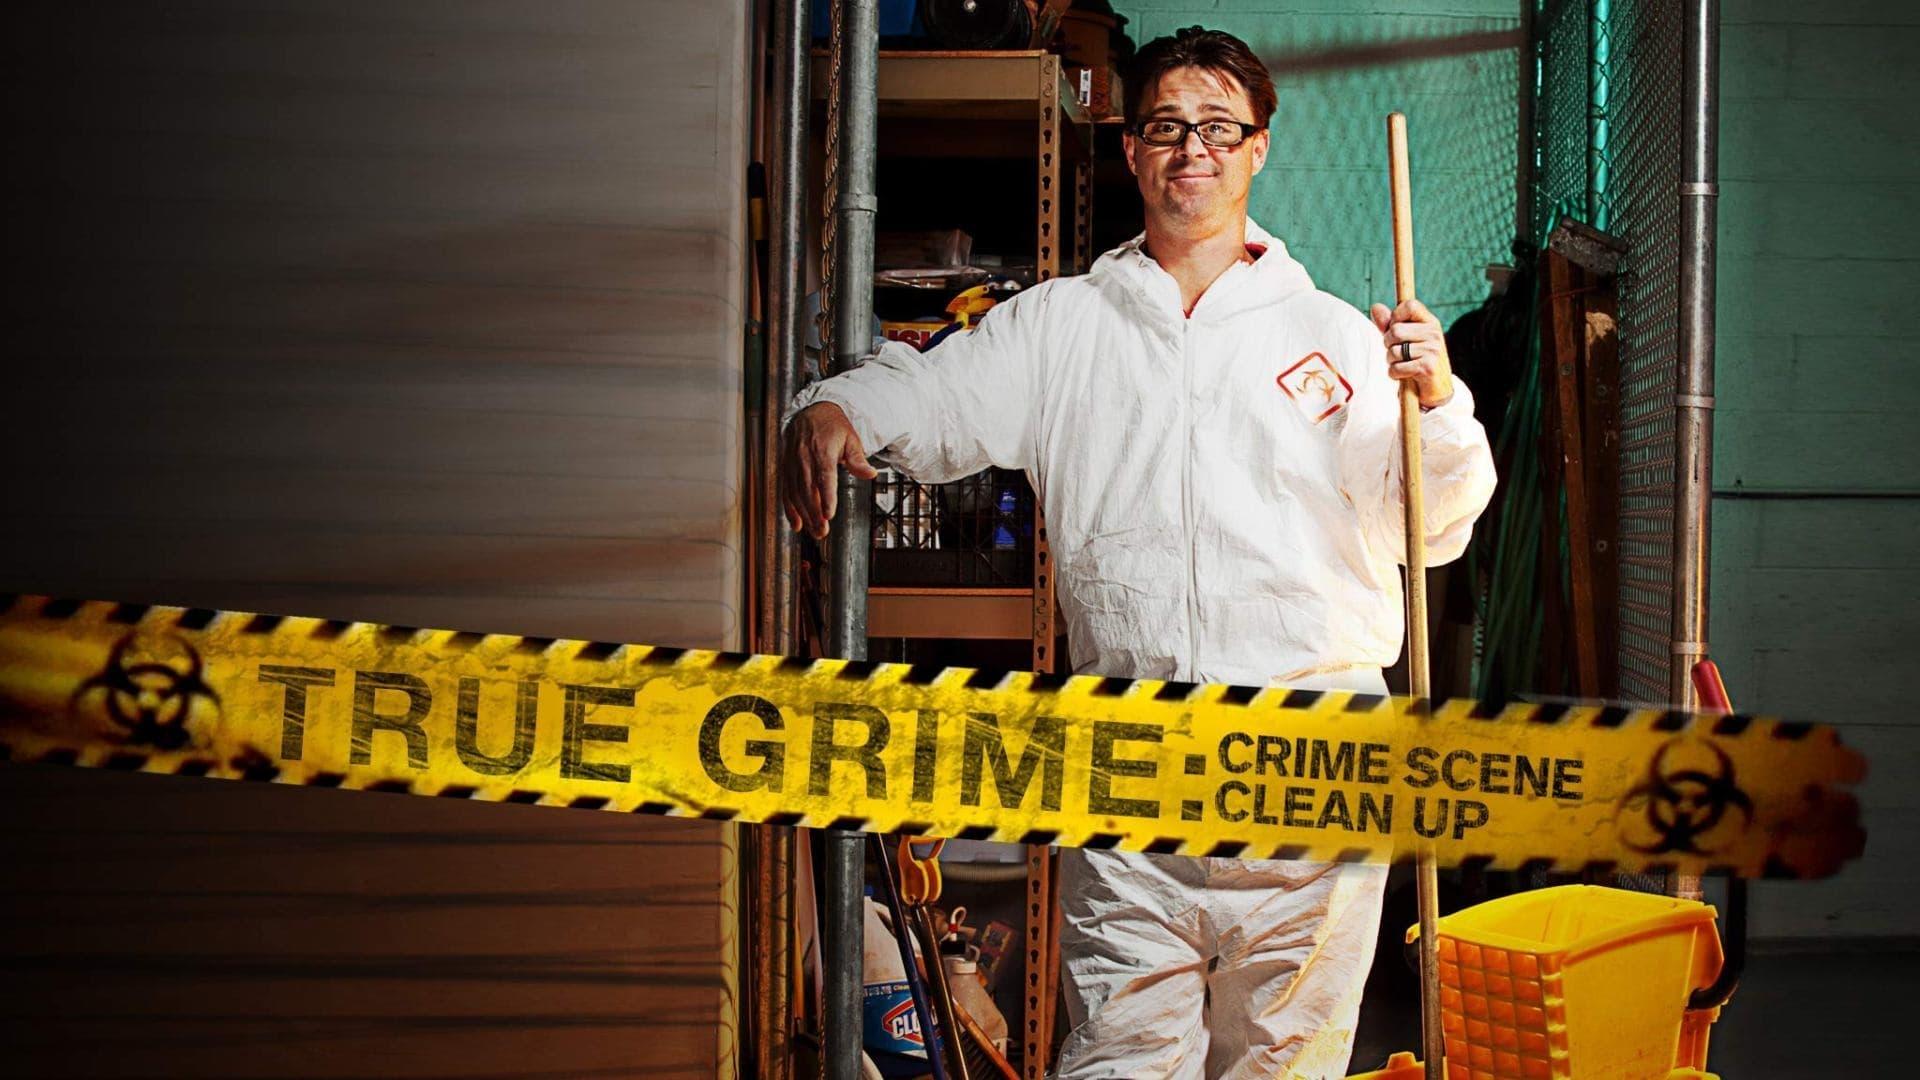 True Grime: Crime Scene Cleanup backdrop